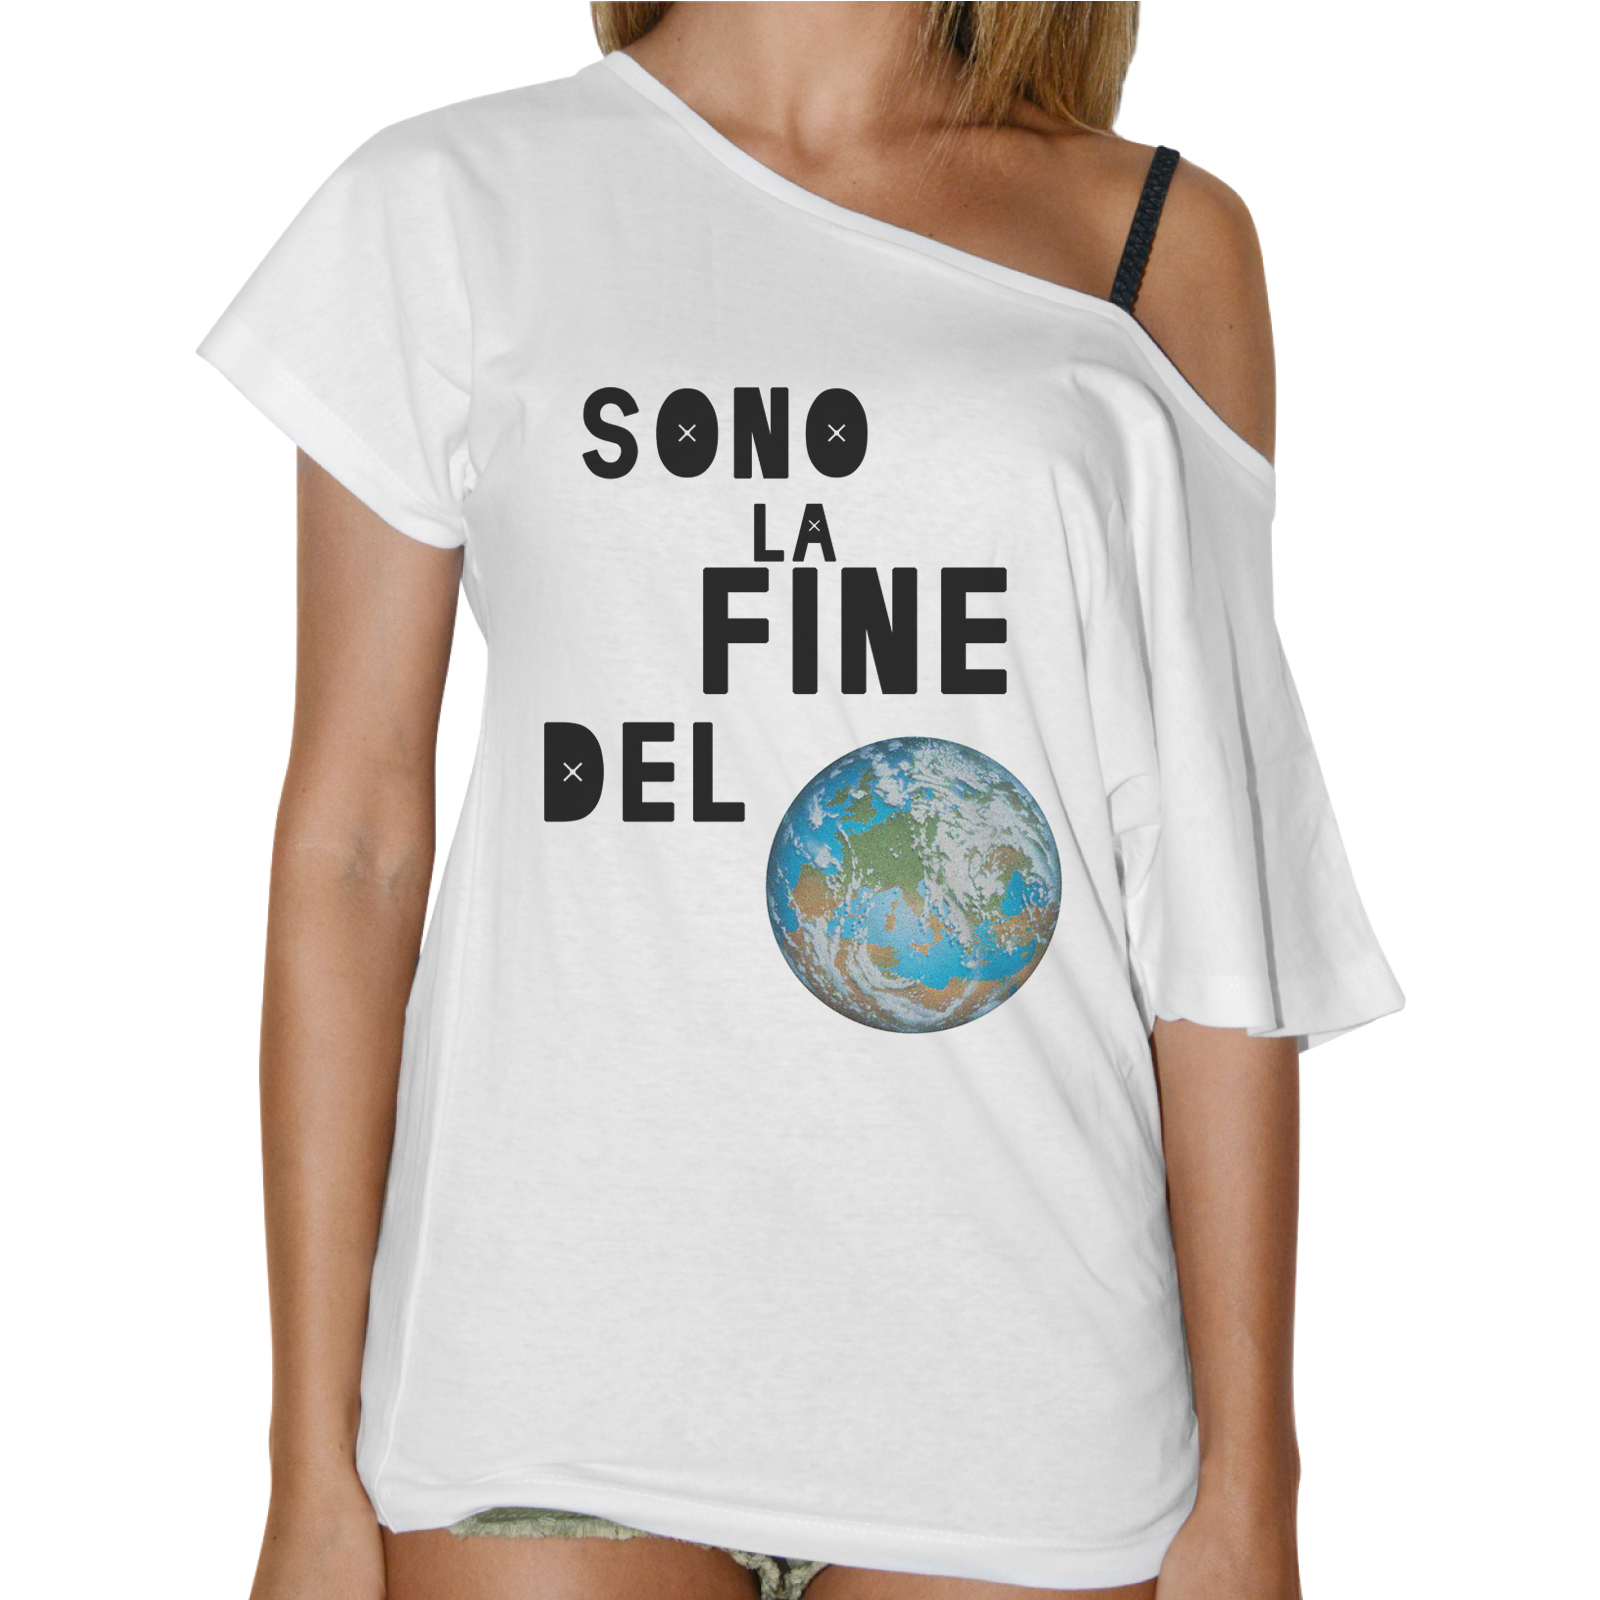 T-Shirt Donna Collo Barca SONO LA FINE DEL MONDO